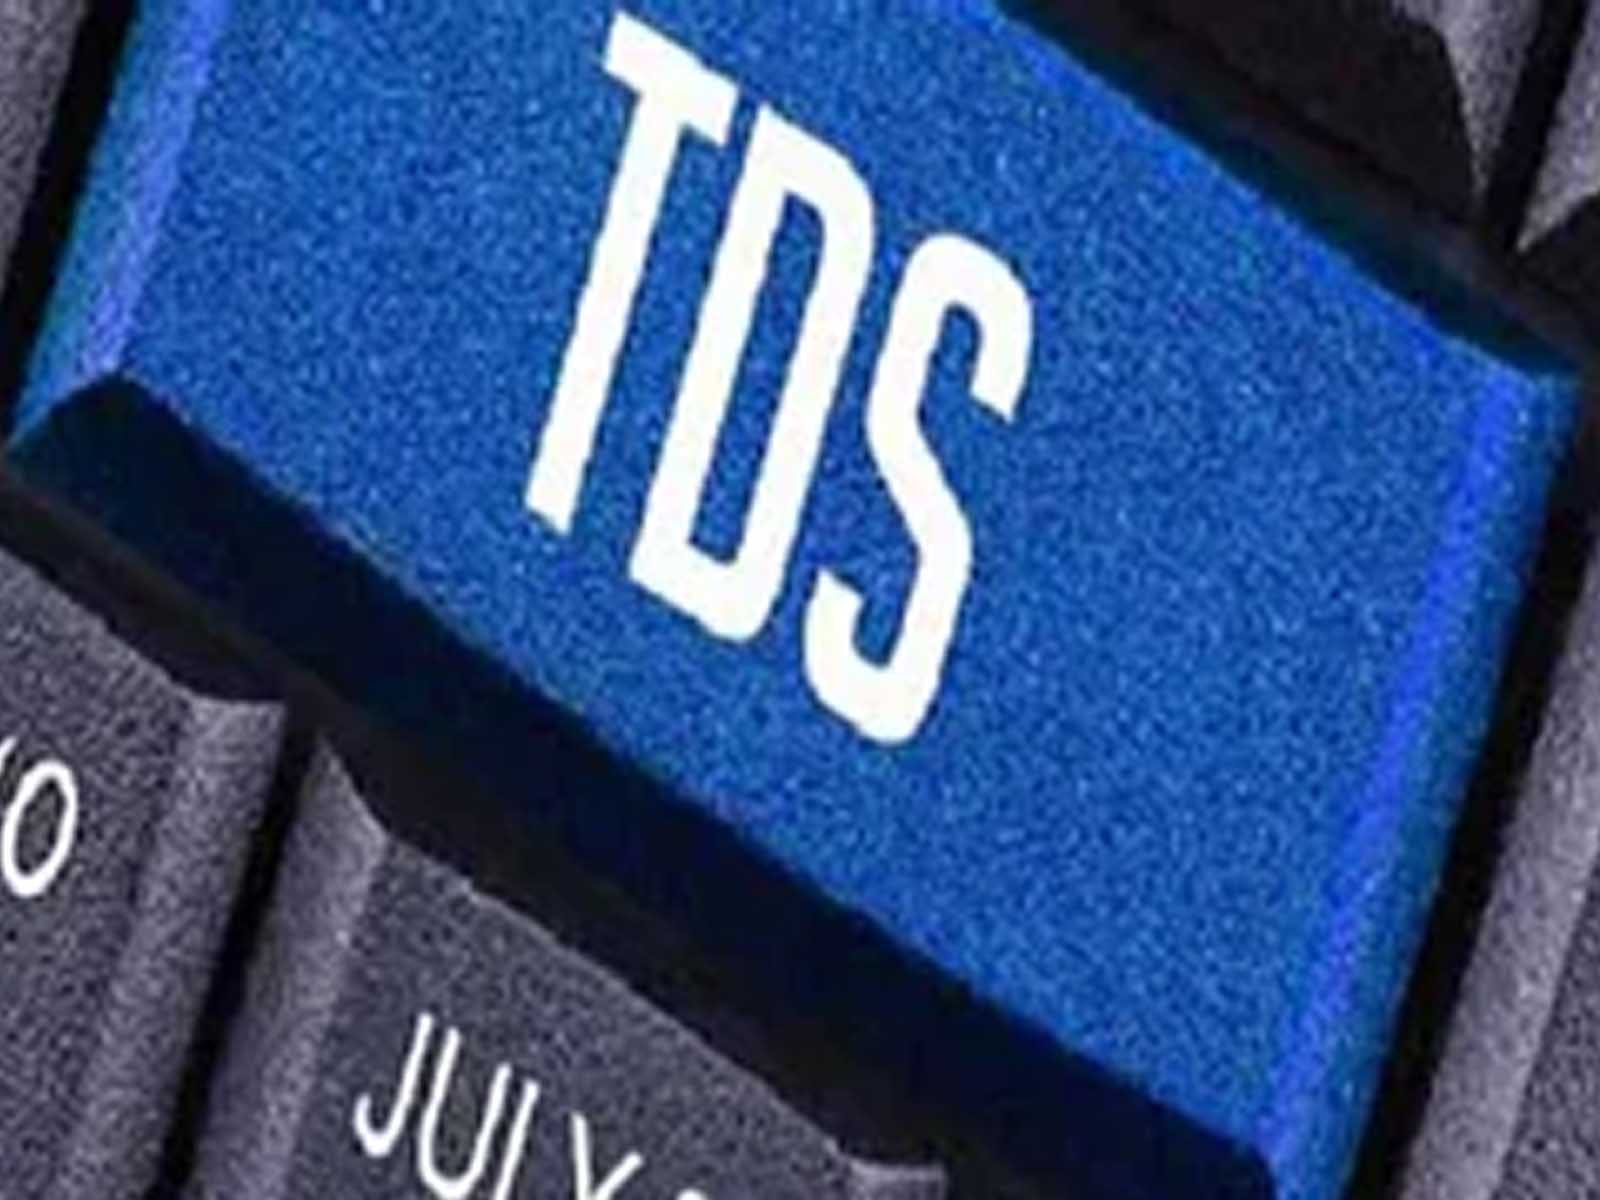 TDS Rules Changed: ਵੱਧ ਨਕਦੀ ਕਢਵਾਉਣ ਤੇ ਕਰਨਾ ਪਵੇਗਾ ਭੁਗਤਾਨ, ਜਾਣੋ ਕਿੰਨਾ ਕੱਟਿਆ ਜਾਵੇਗਾ TDS